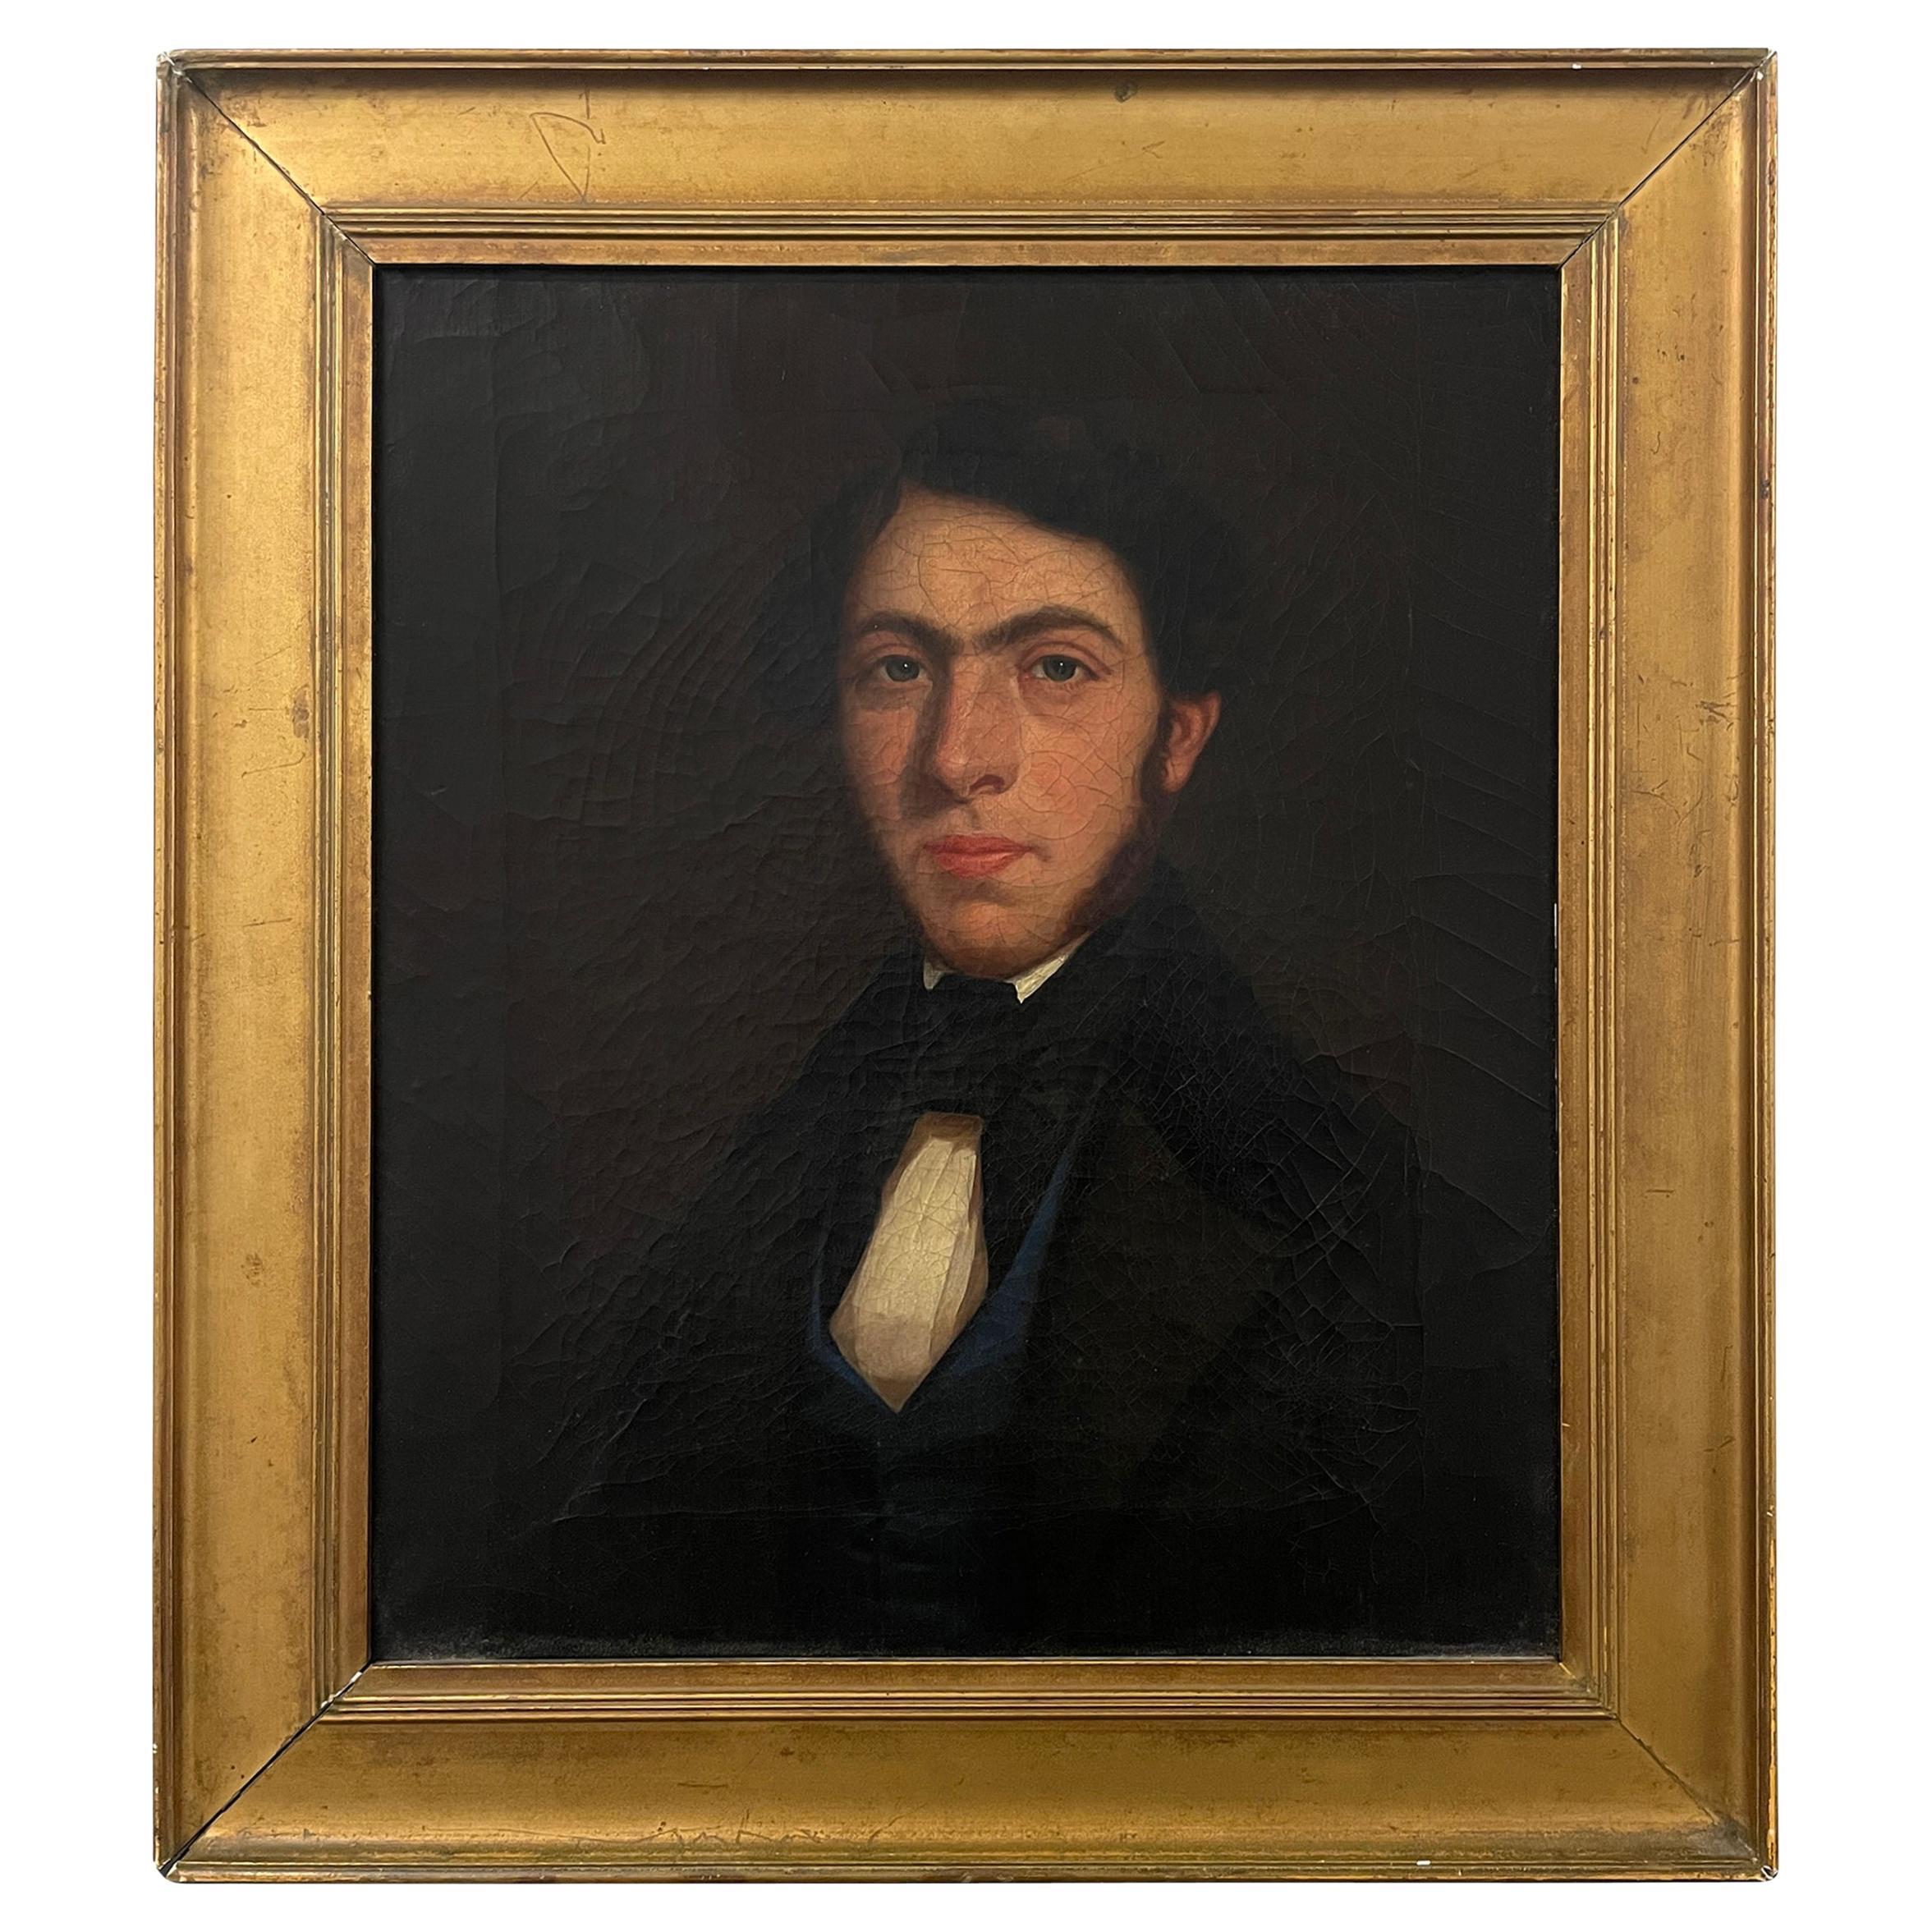 Georgianisches Regency-Porträt eines Gentleman aus dem frühen 19. Jahrhundert